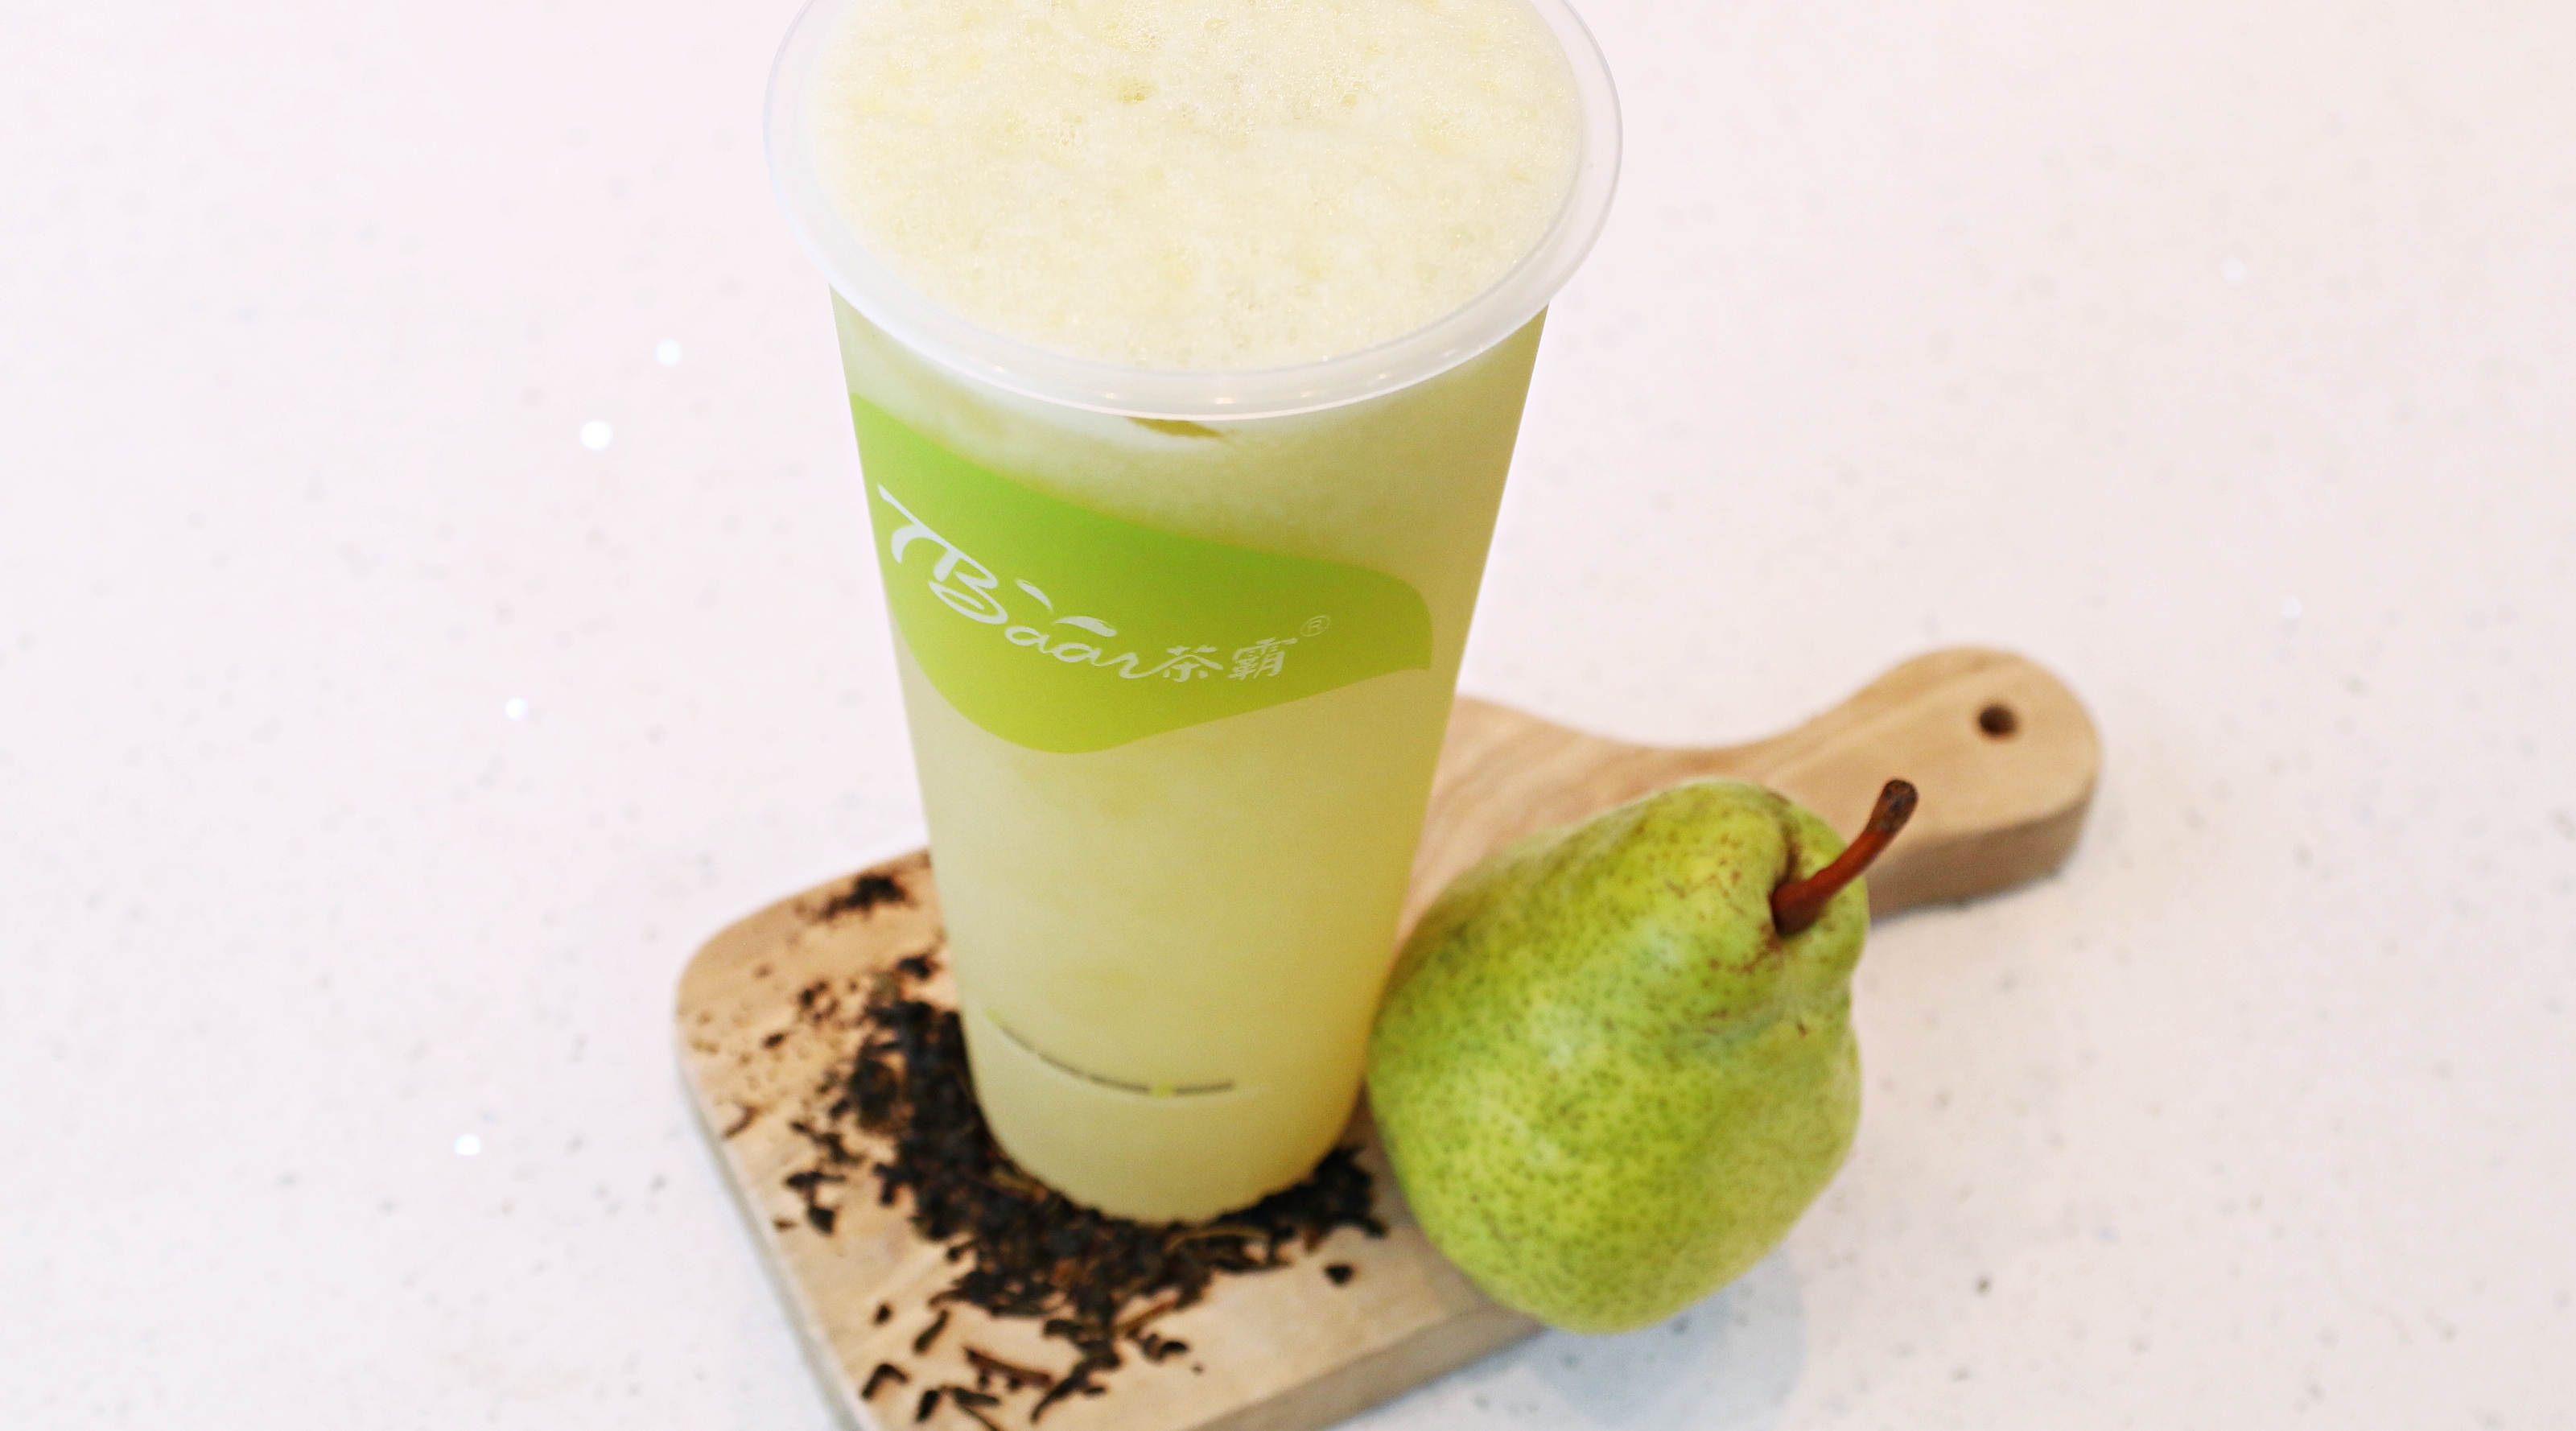 Order Fresh Pear Green Tea 冰糖雪梨青妍 food online from Tbaar store, Quincy on bringmethat.com